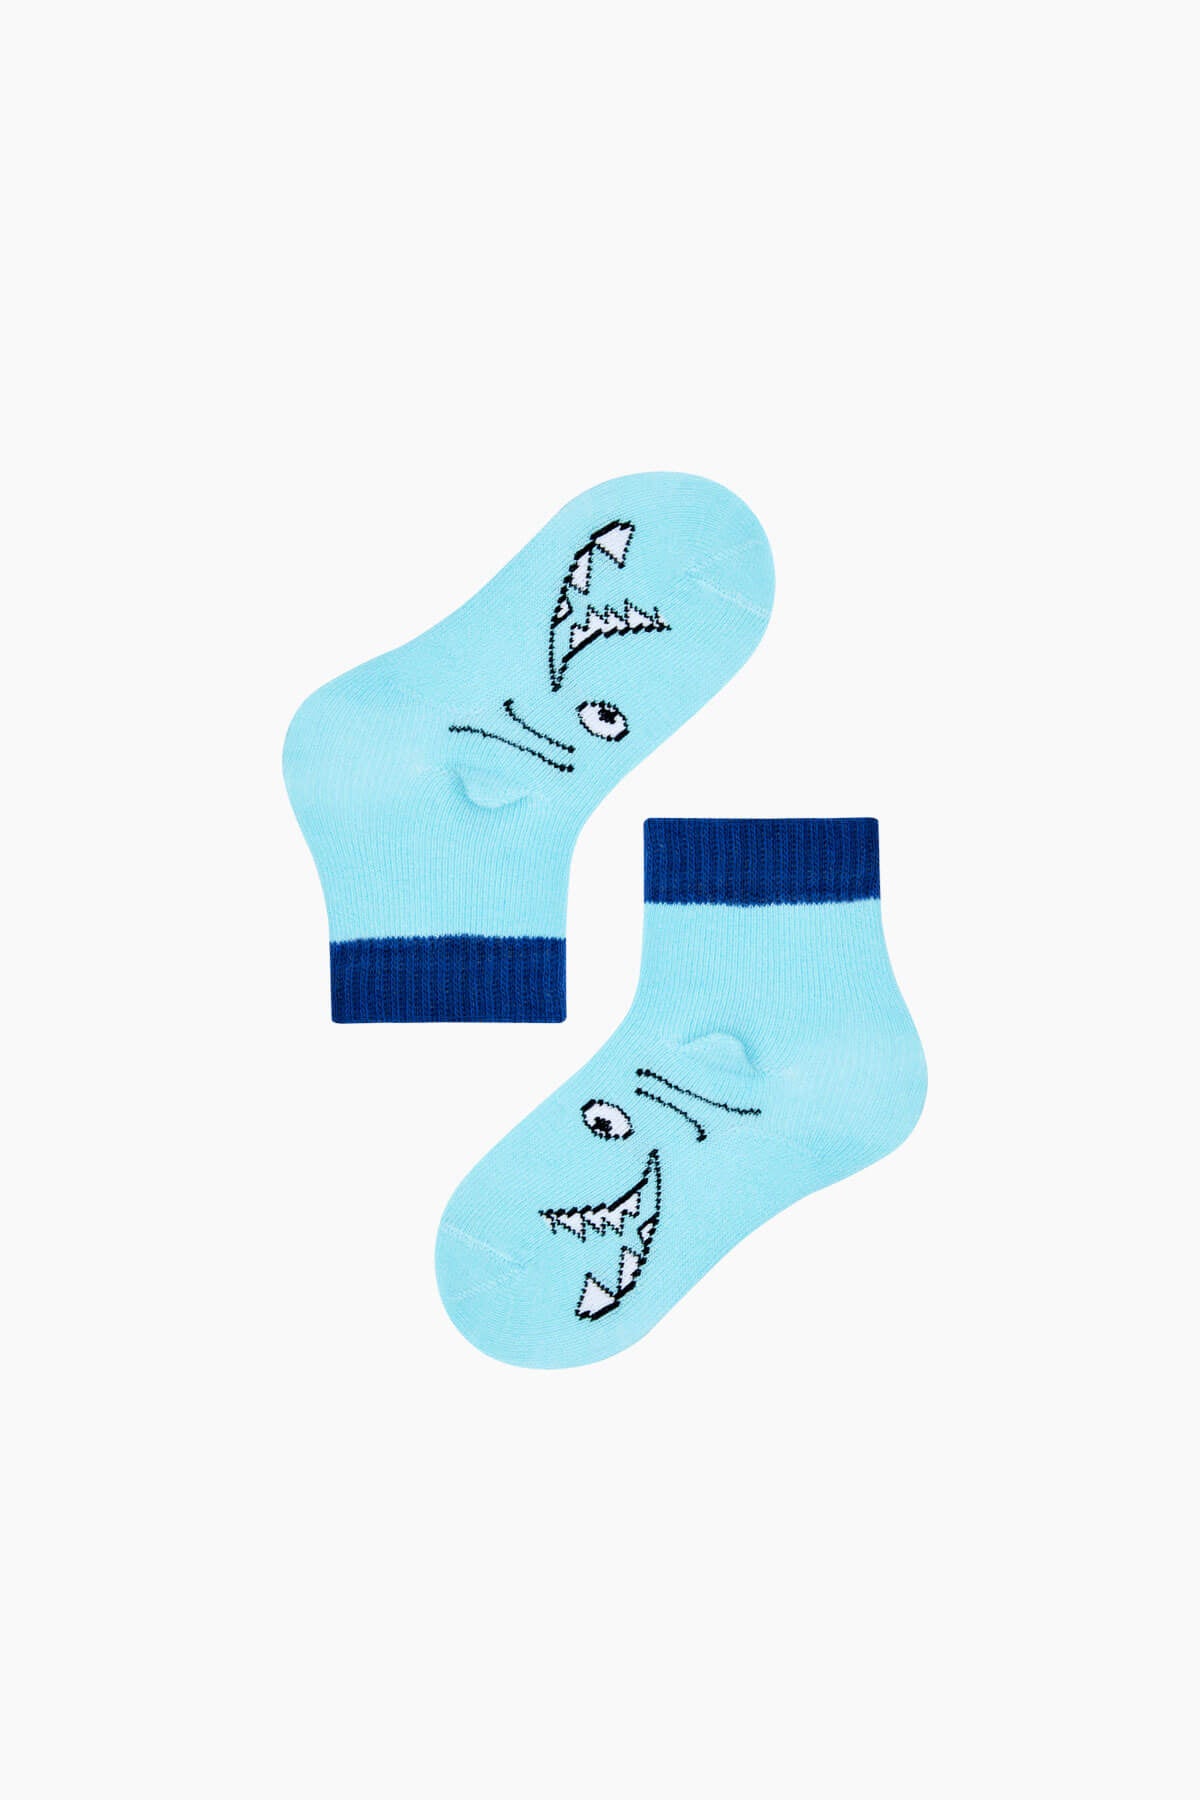 3d shark baby socks gift